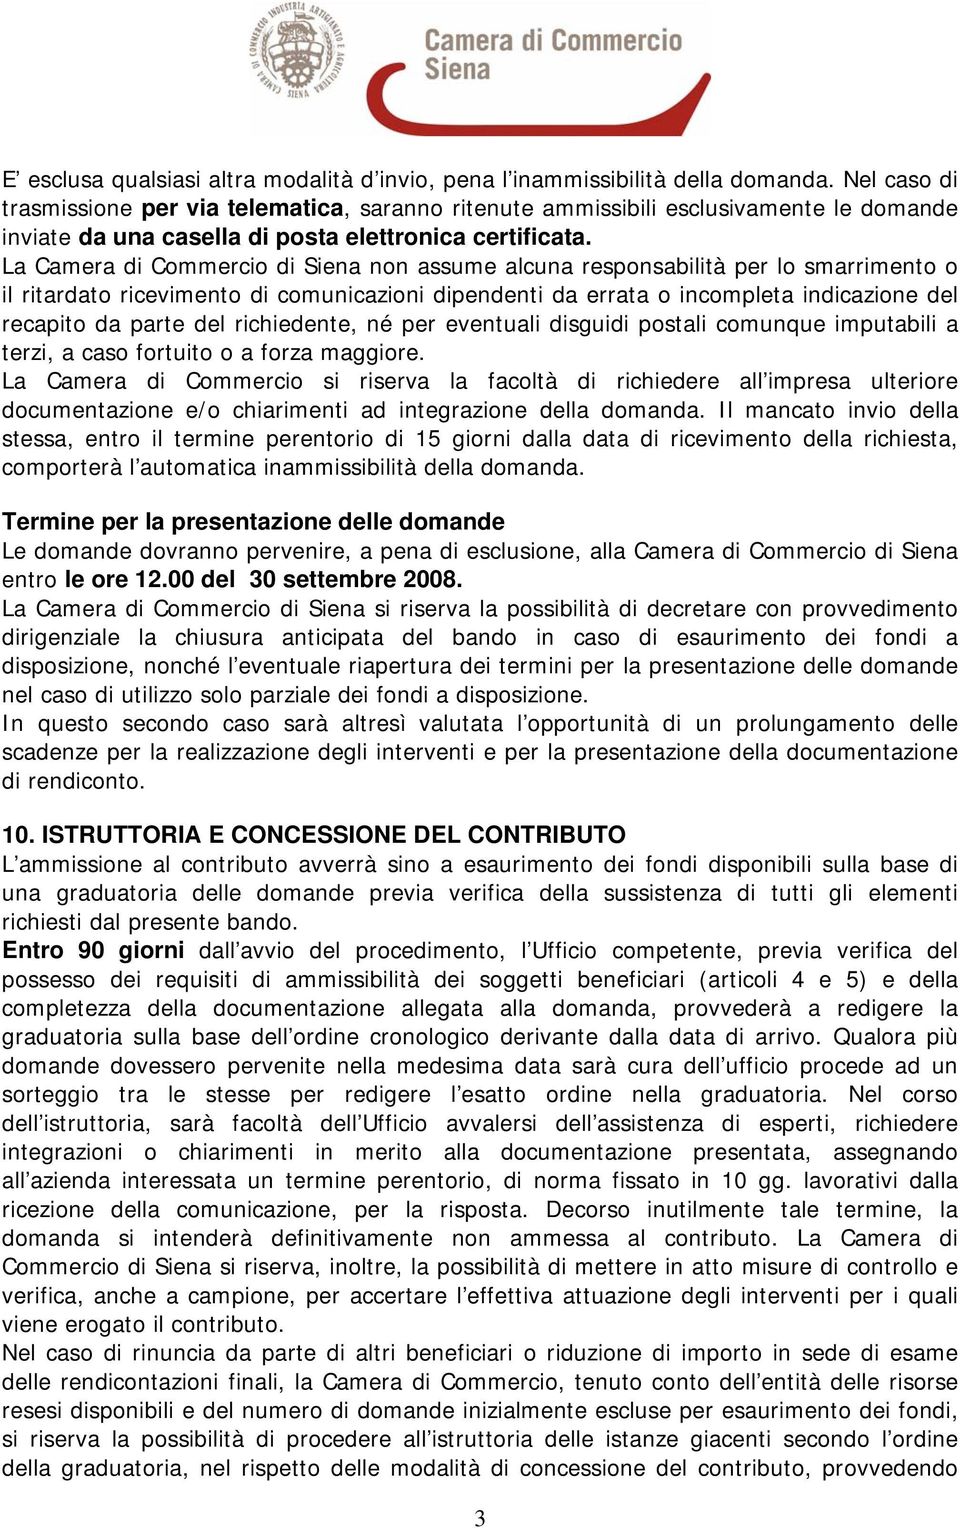 La Camera di Commercio di Siena non assume alcuna responsabilità per lo smarrimento o il ritardato ricevimento di comunicazioni dipendenti da errata o incompleta indicazione del recapito da parte del